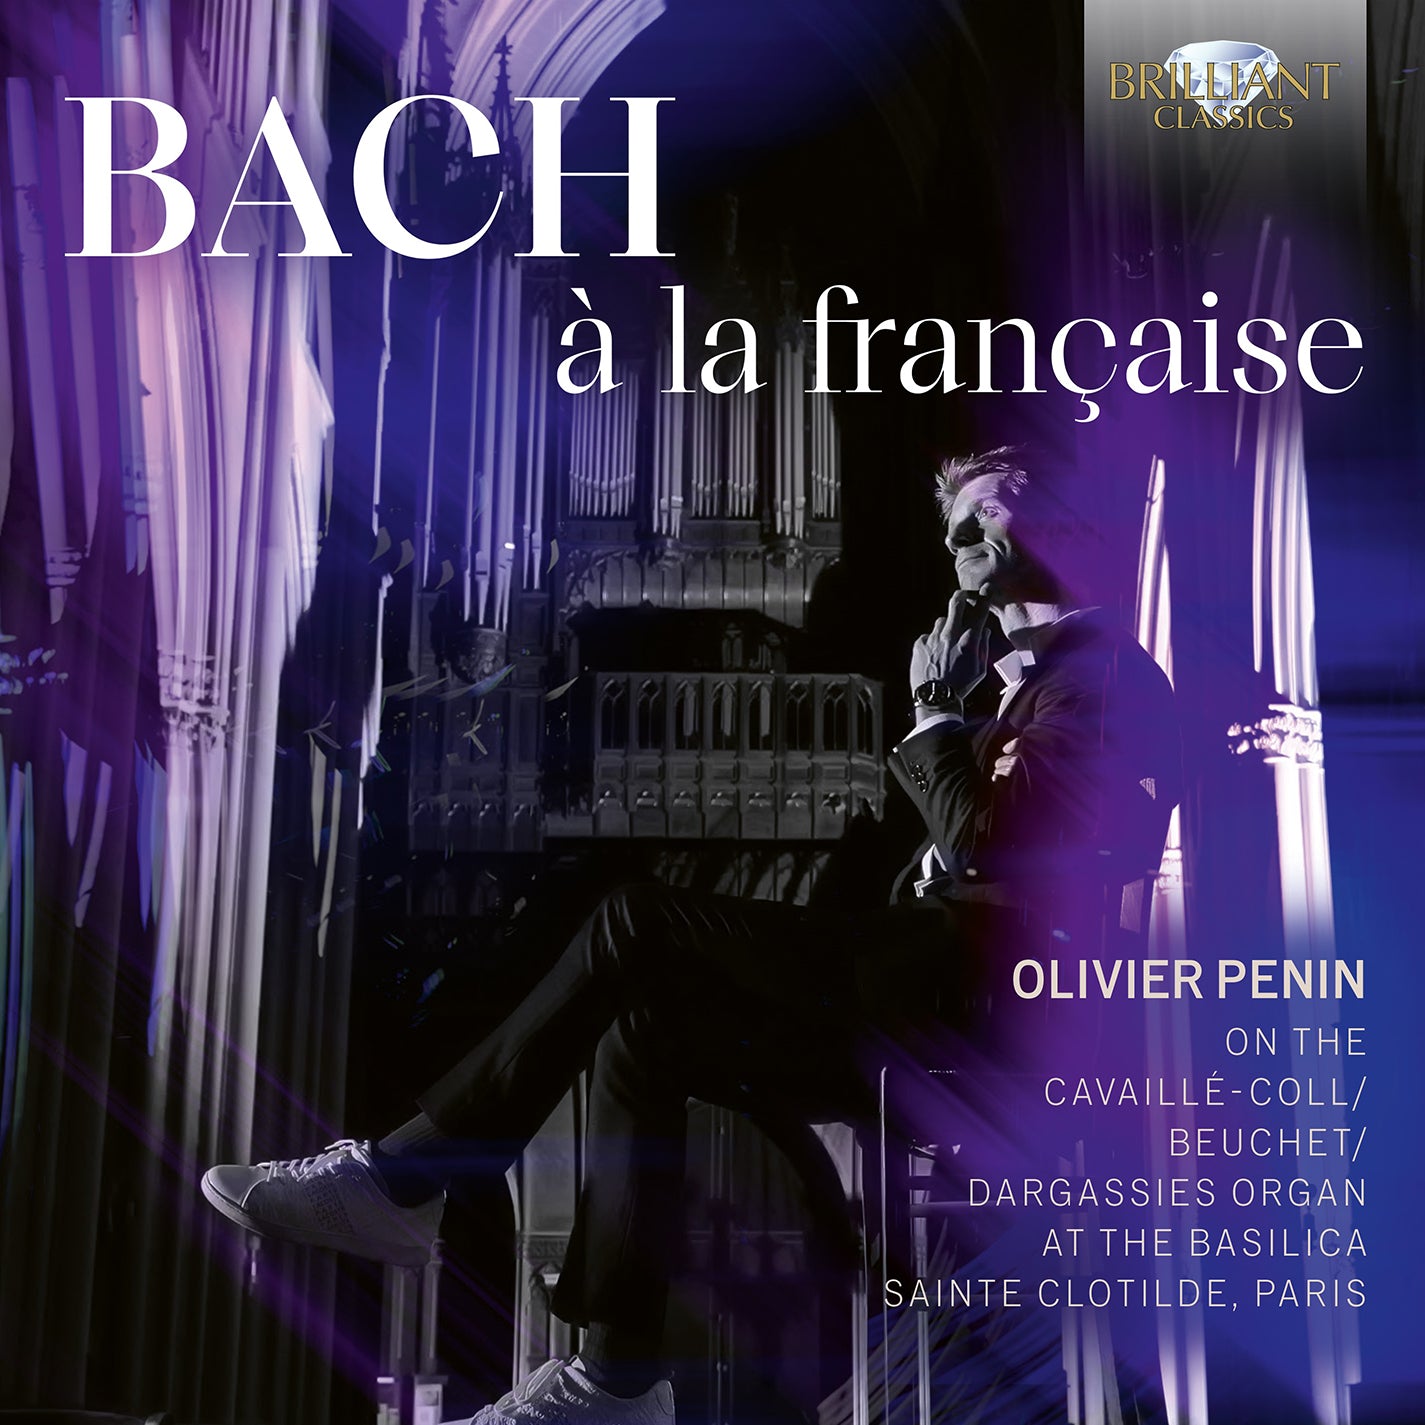 J.S. Bach: a la francaise